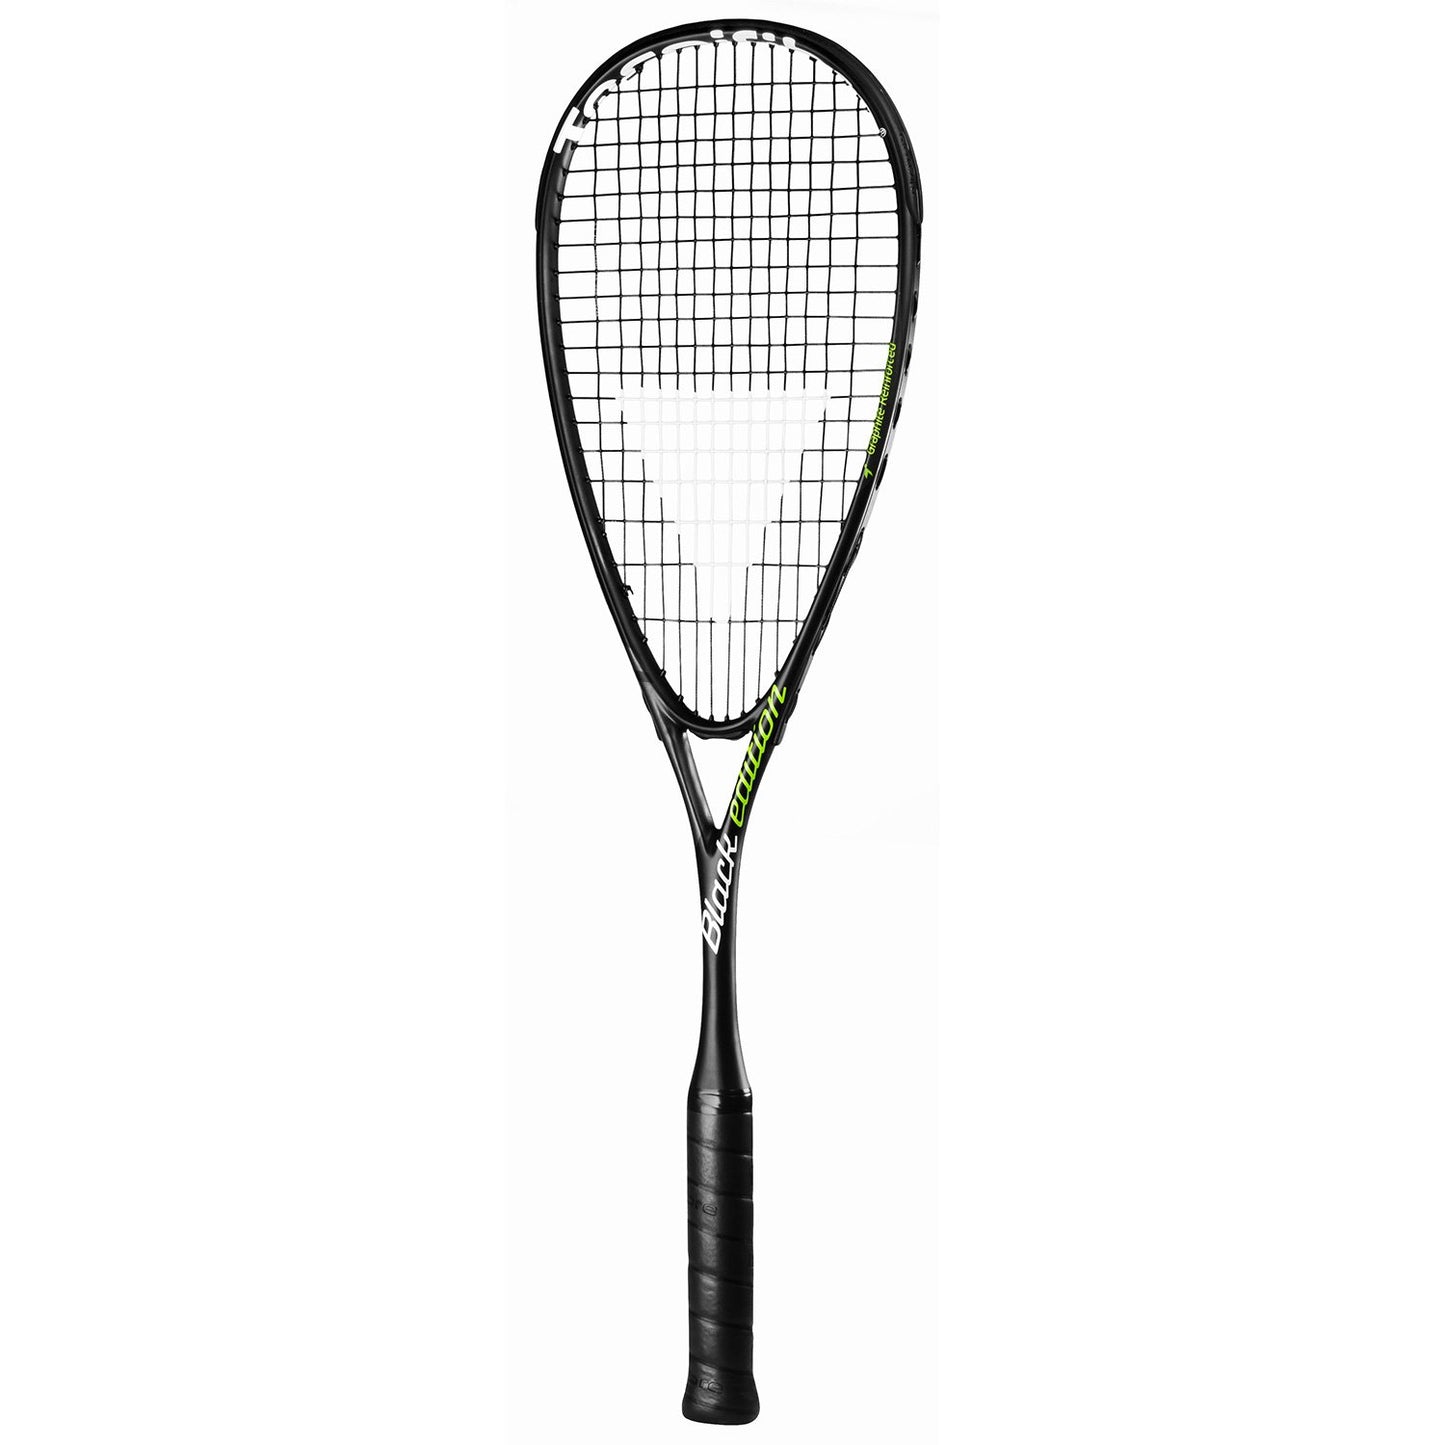 Tecnifibre Black Edition 2017 Squash Racquet - Best Price online Prokicksports.com